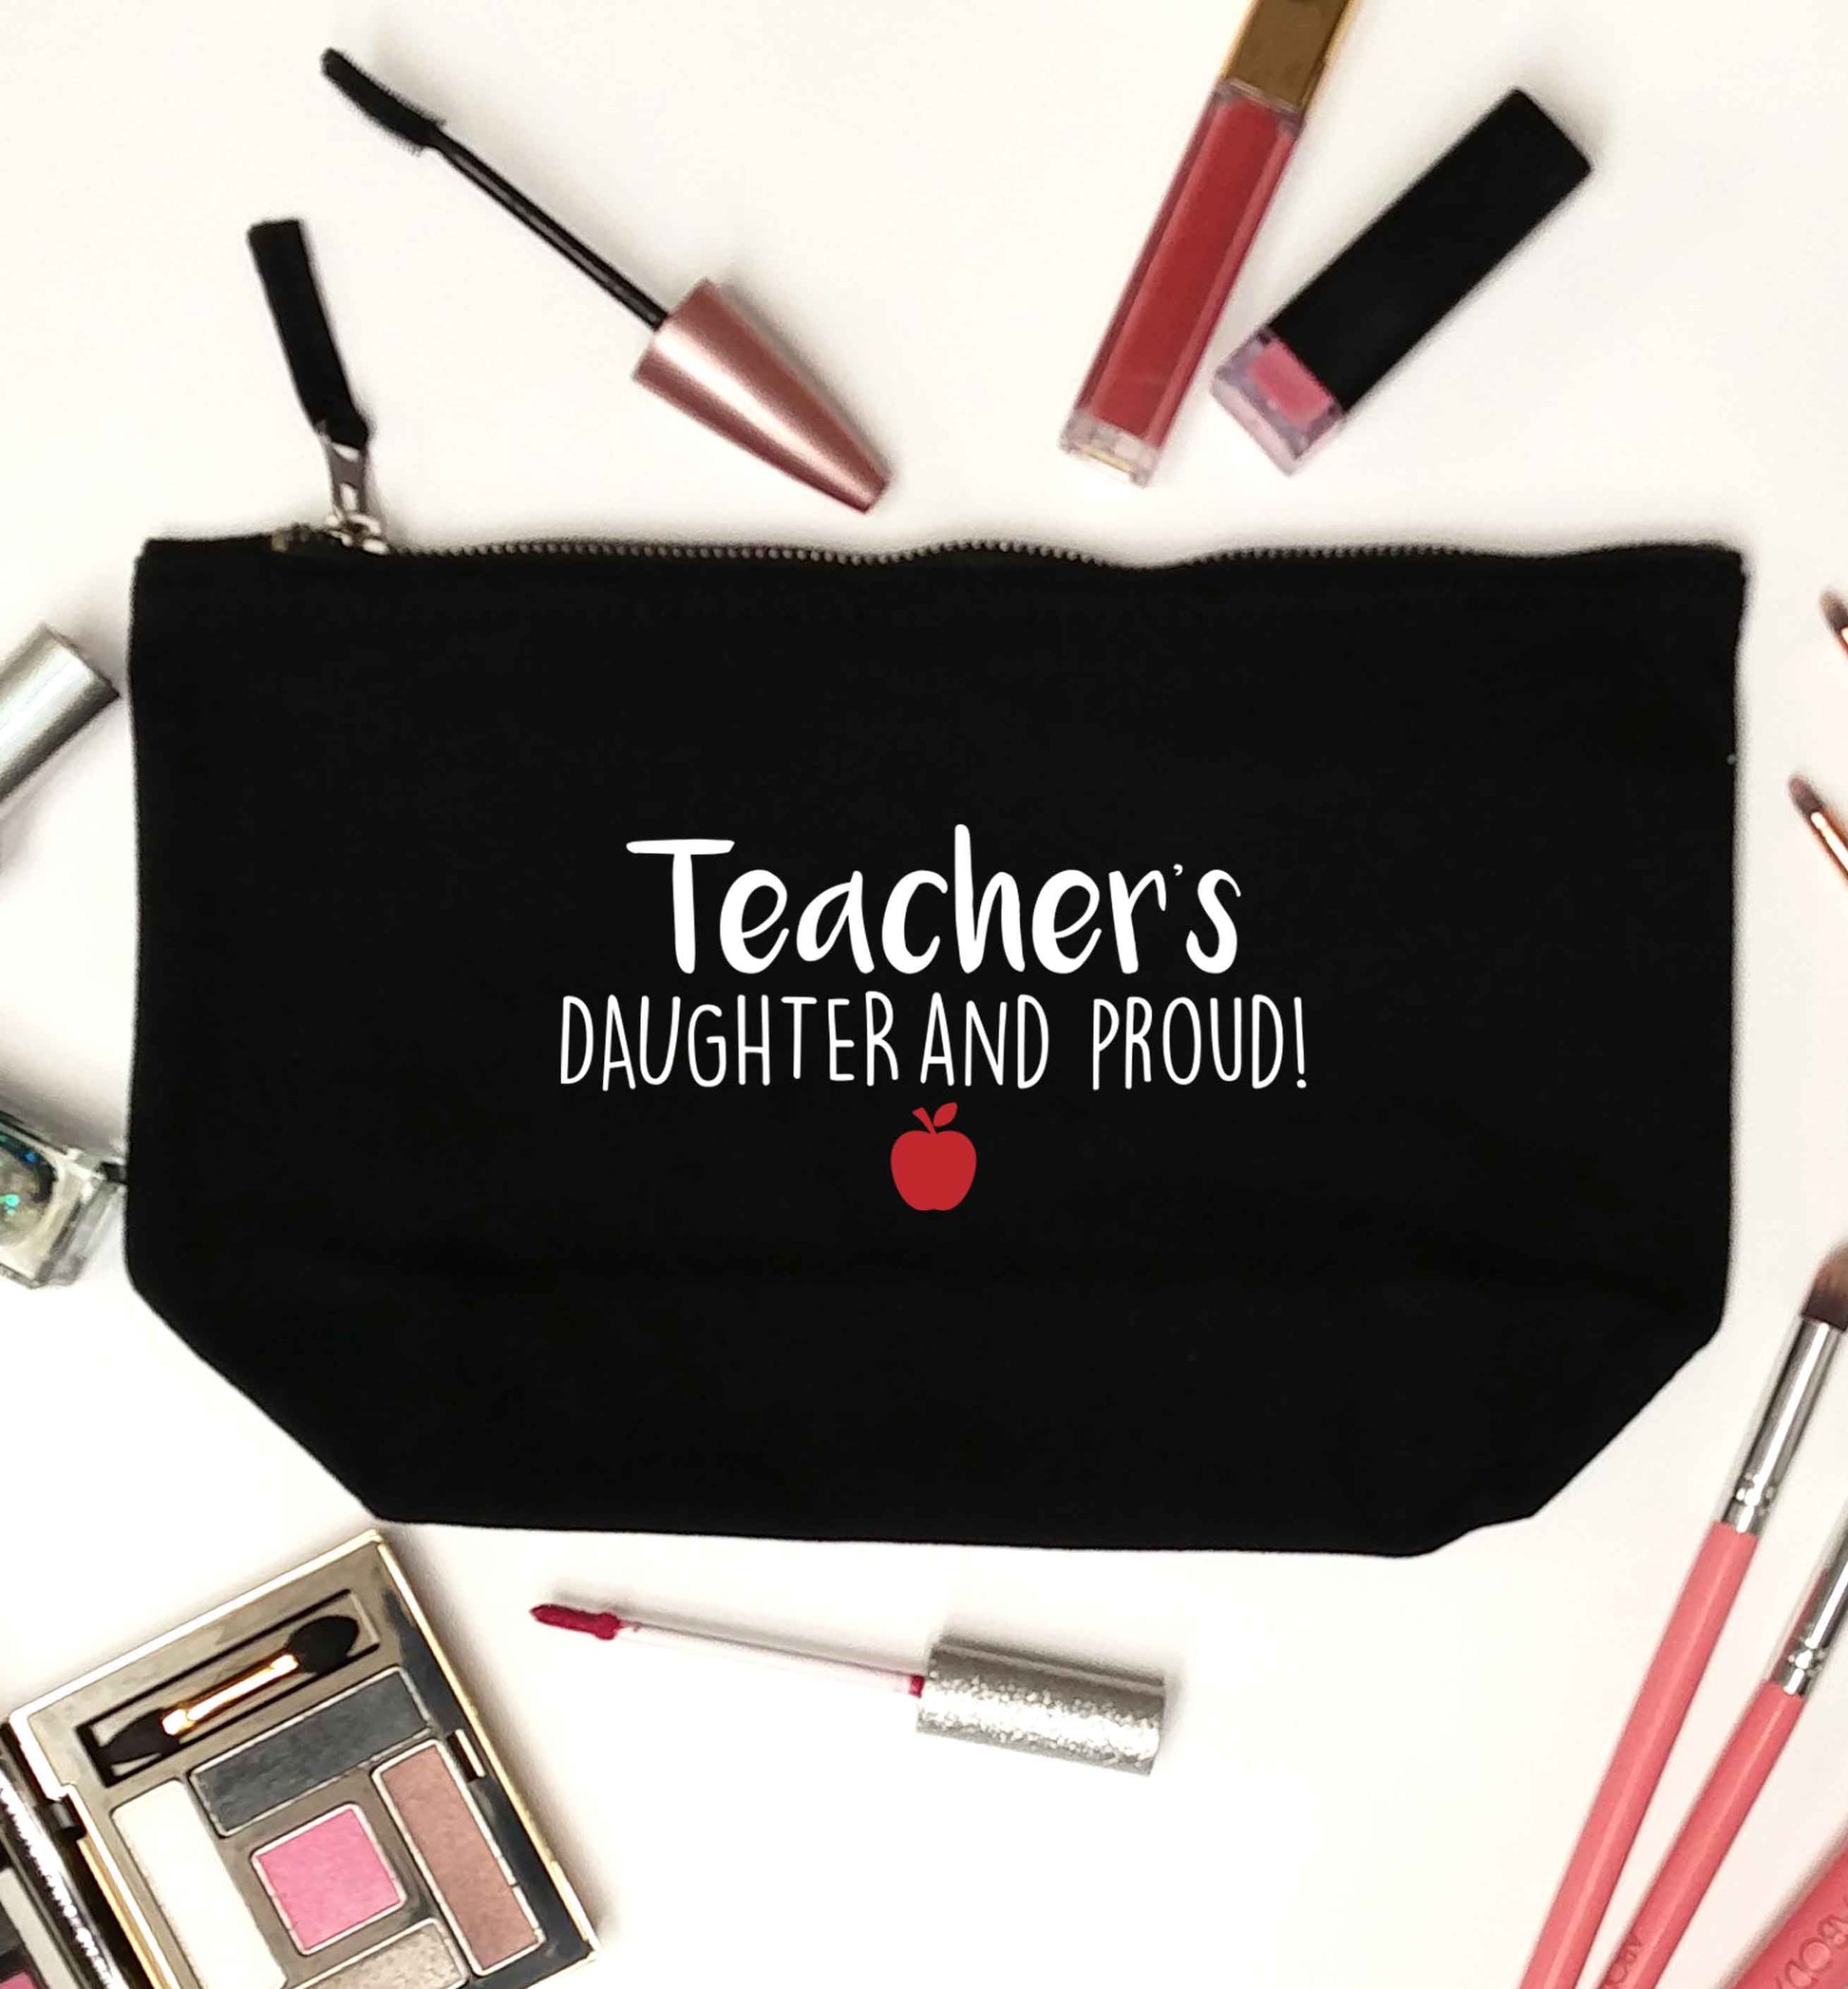 Teachers daughter and proud black makeup bag